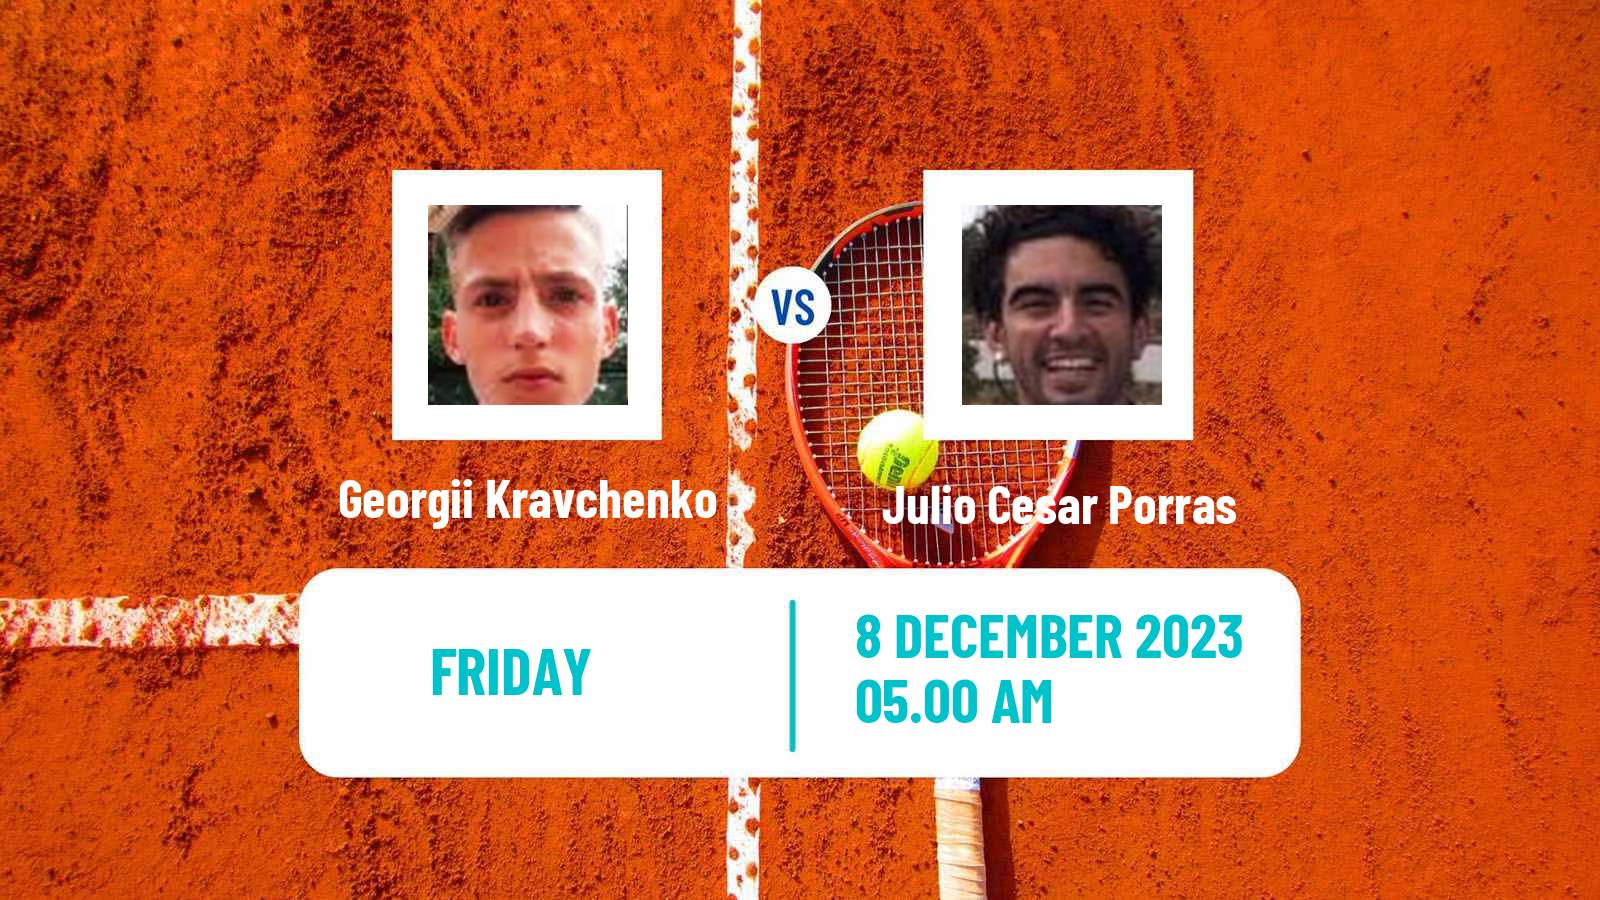 Tennis ITF M15 Madrid 3 Men Georgii Kravchenko - Julio Cesar Porras